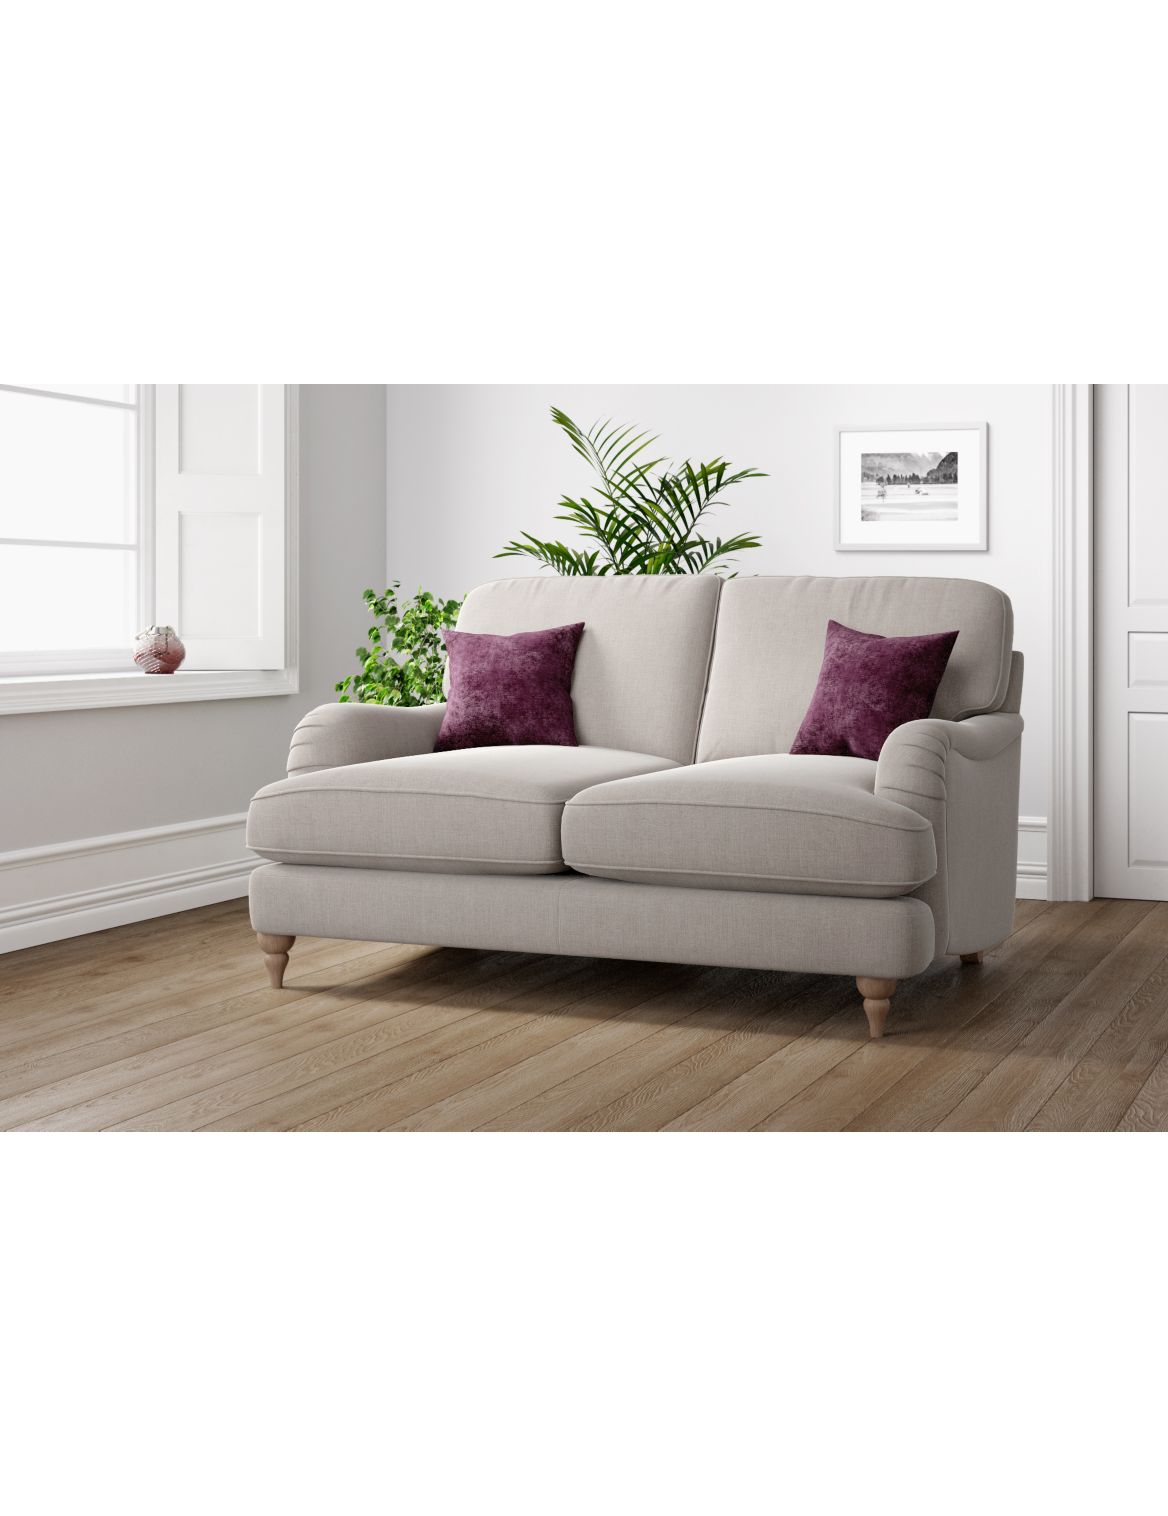 Rochester Small Sofa